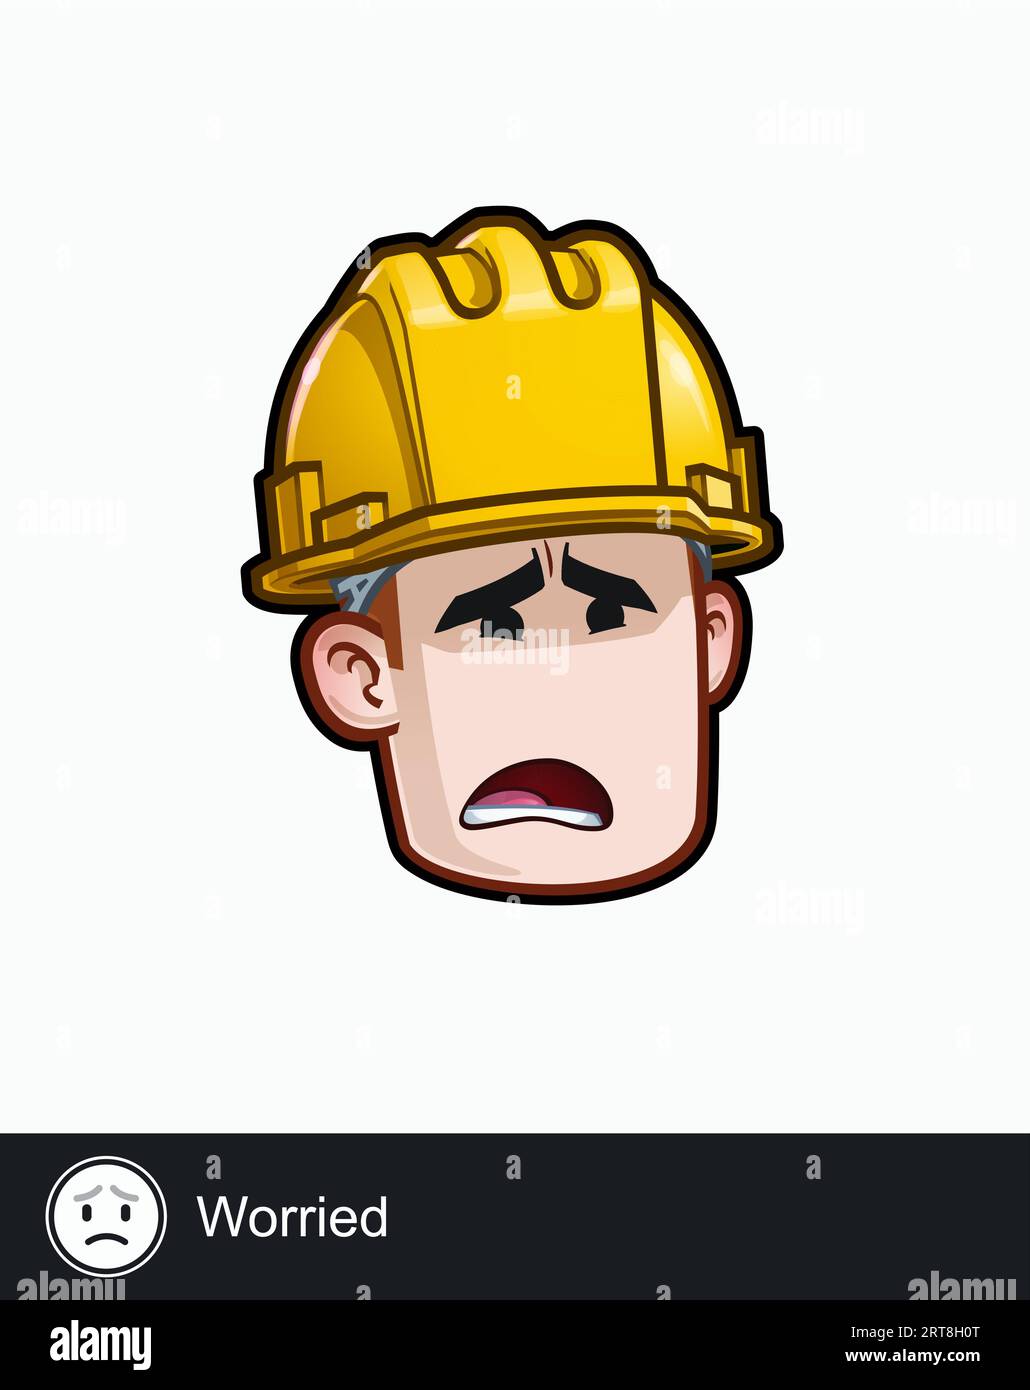 Icona di una faccia di un operaio edile con un'espressione emotiva preoccupata. Tutti gli elementi sono ordinati su livelli e gruppi ben descritti. Illustrazione Vettoriale